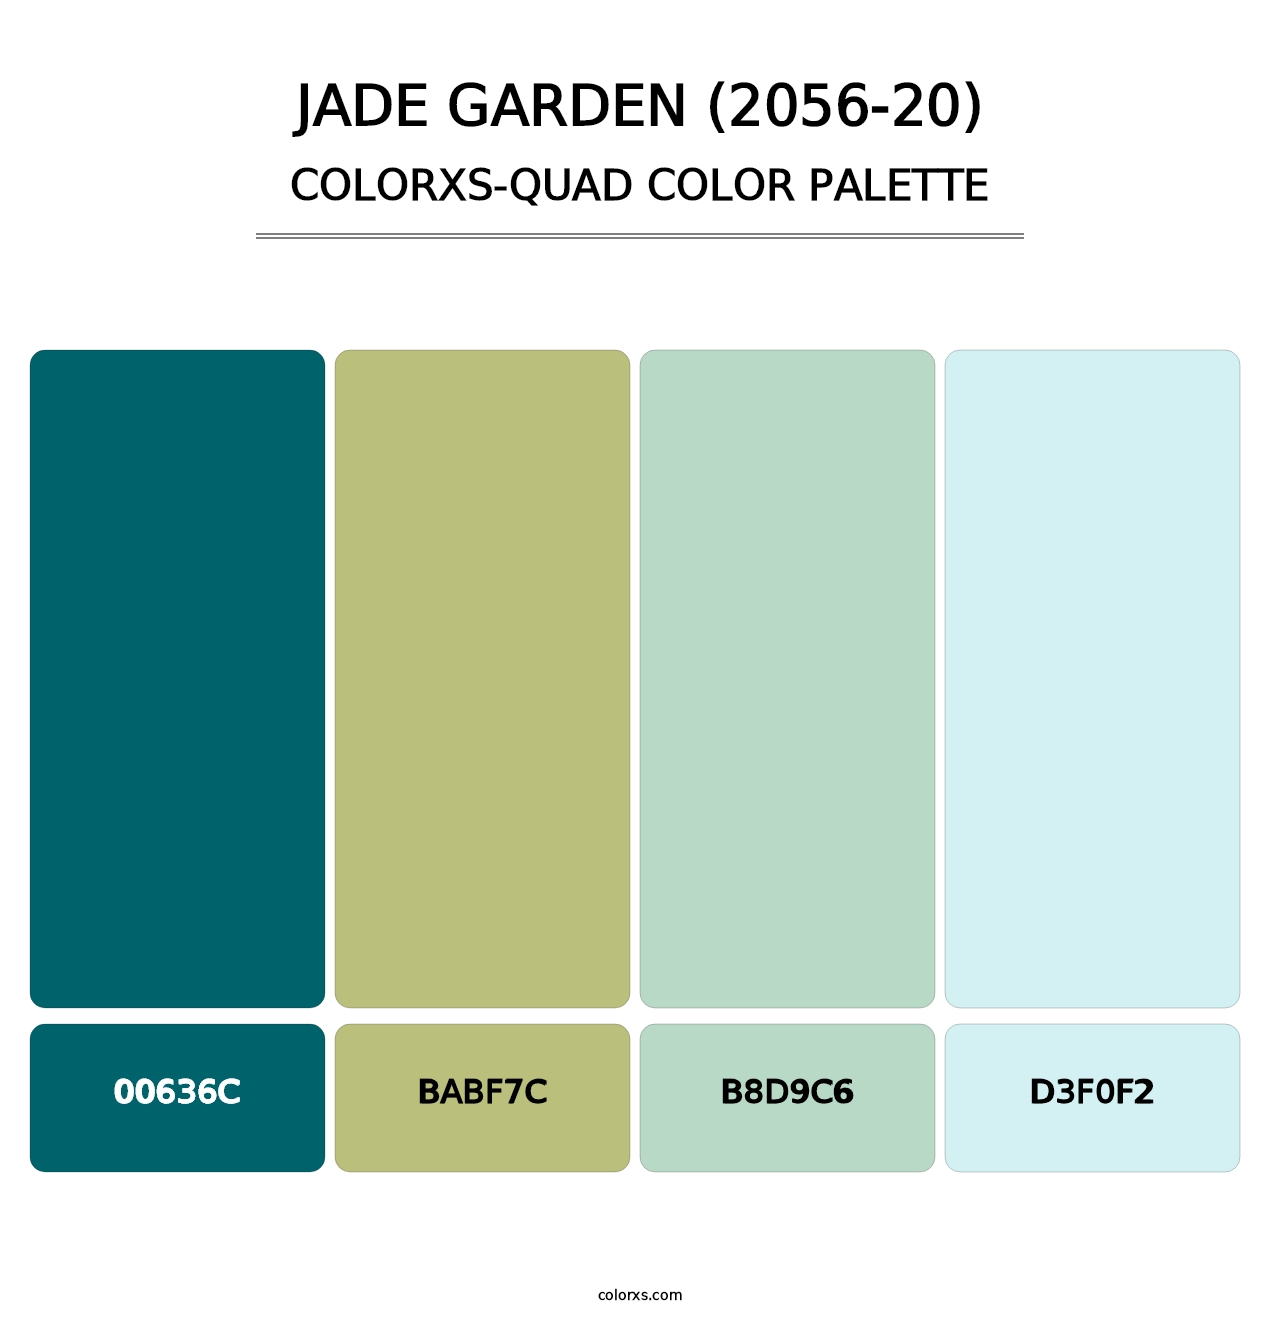 Jade Garden (2056-20) - Colorxs Quad Palette